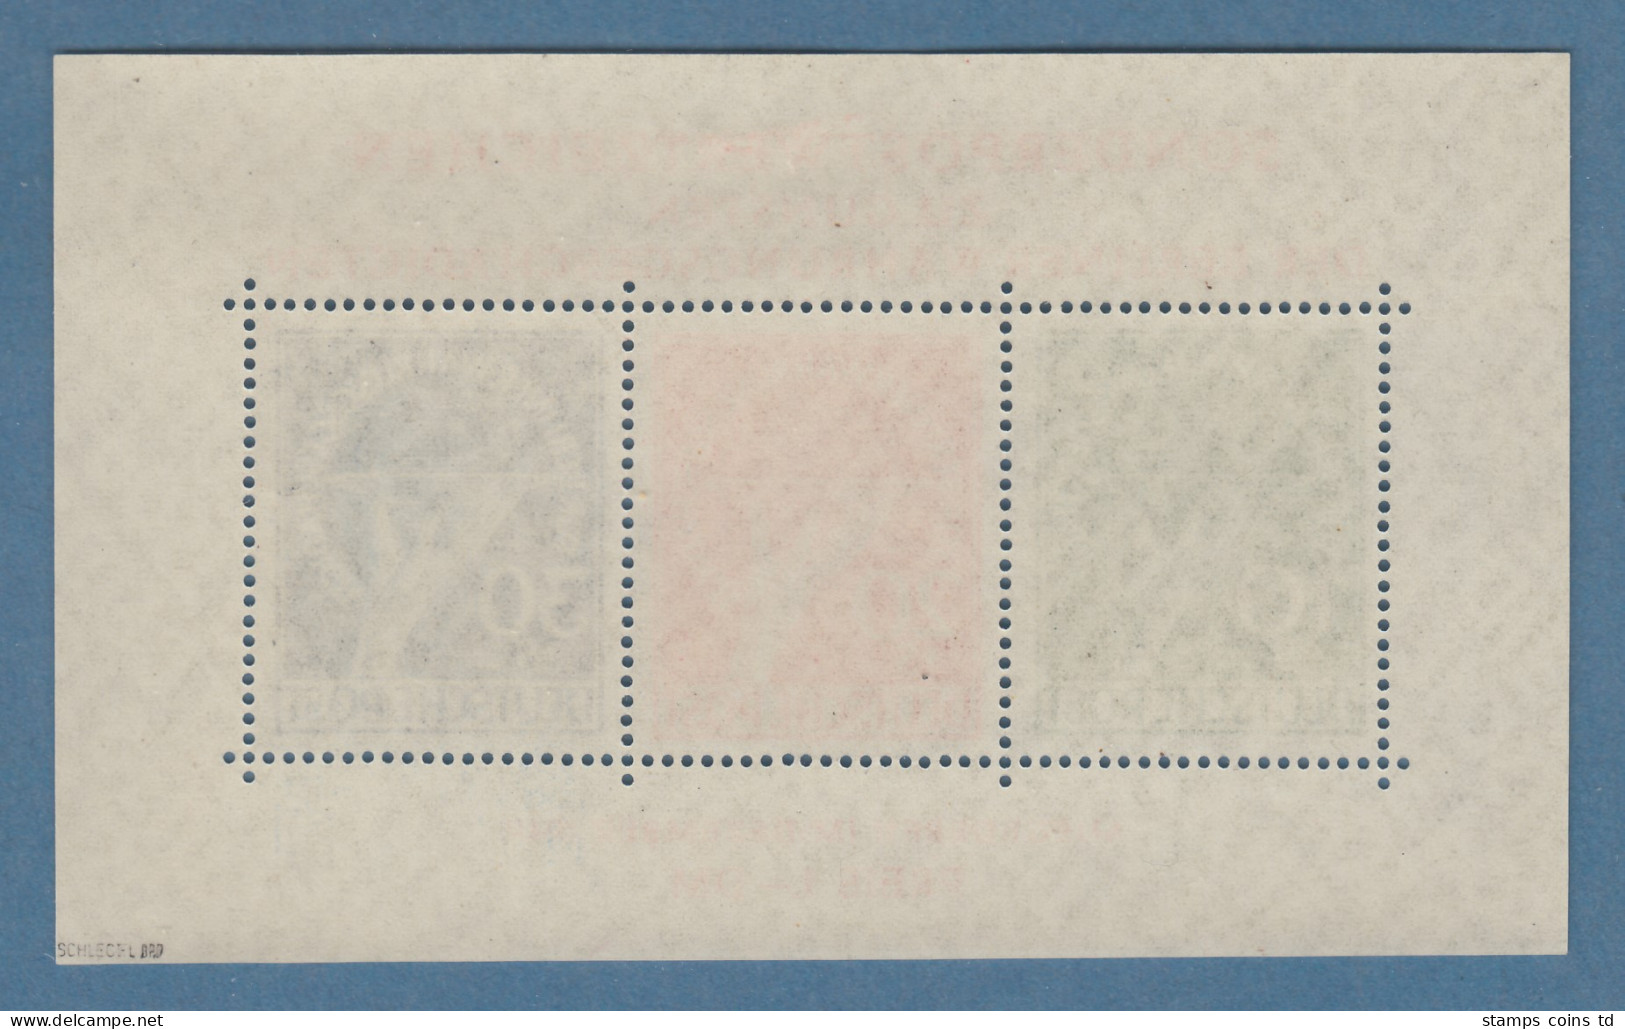 Berlin 1949 Währungsgeschädigten-Block **, Attest Schlegel - Unused Stamps